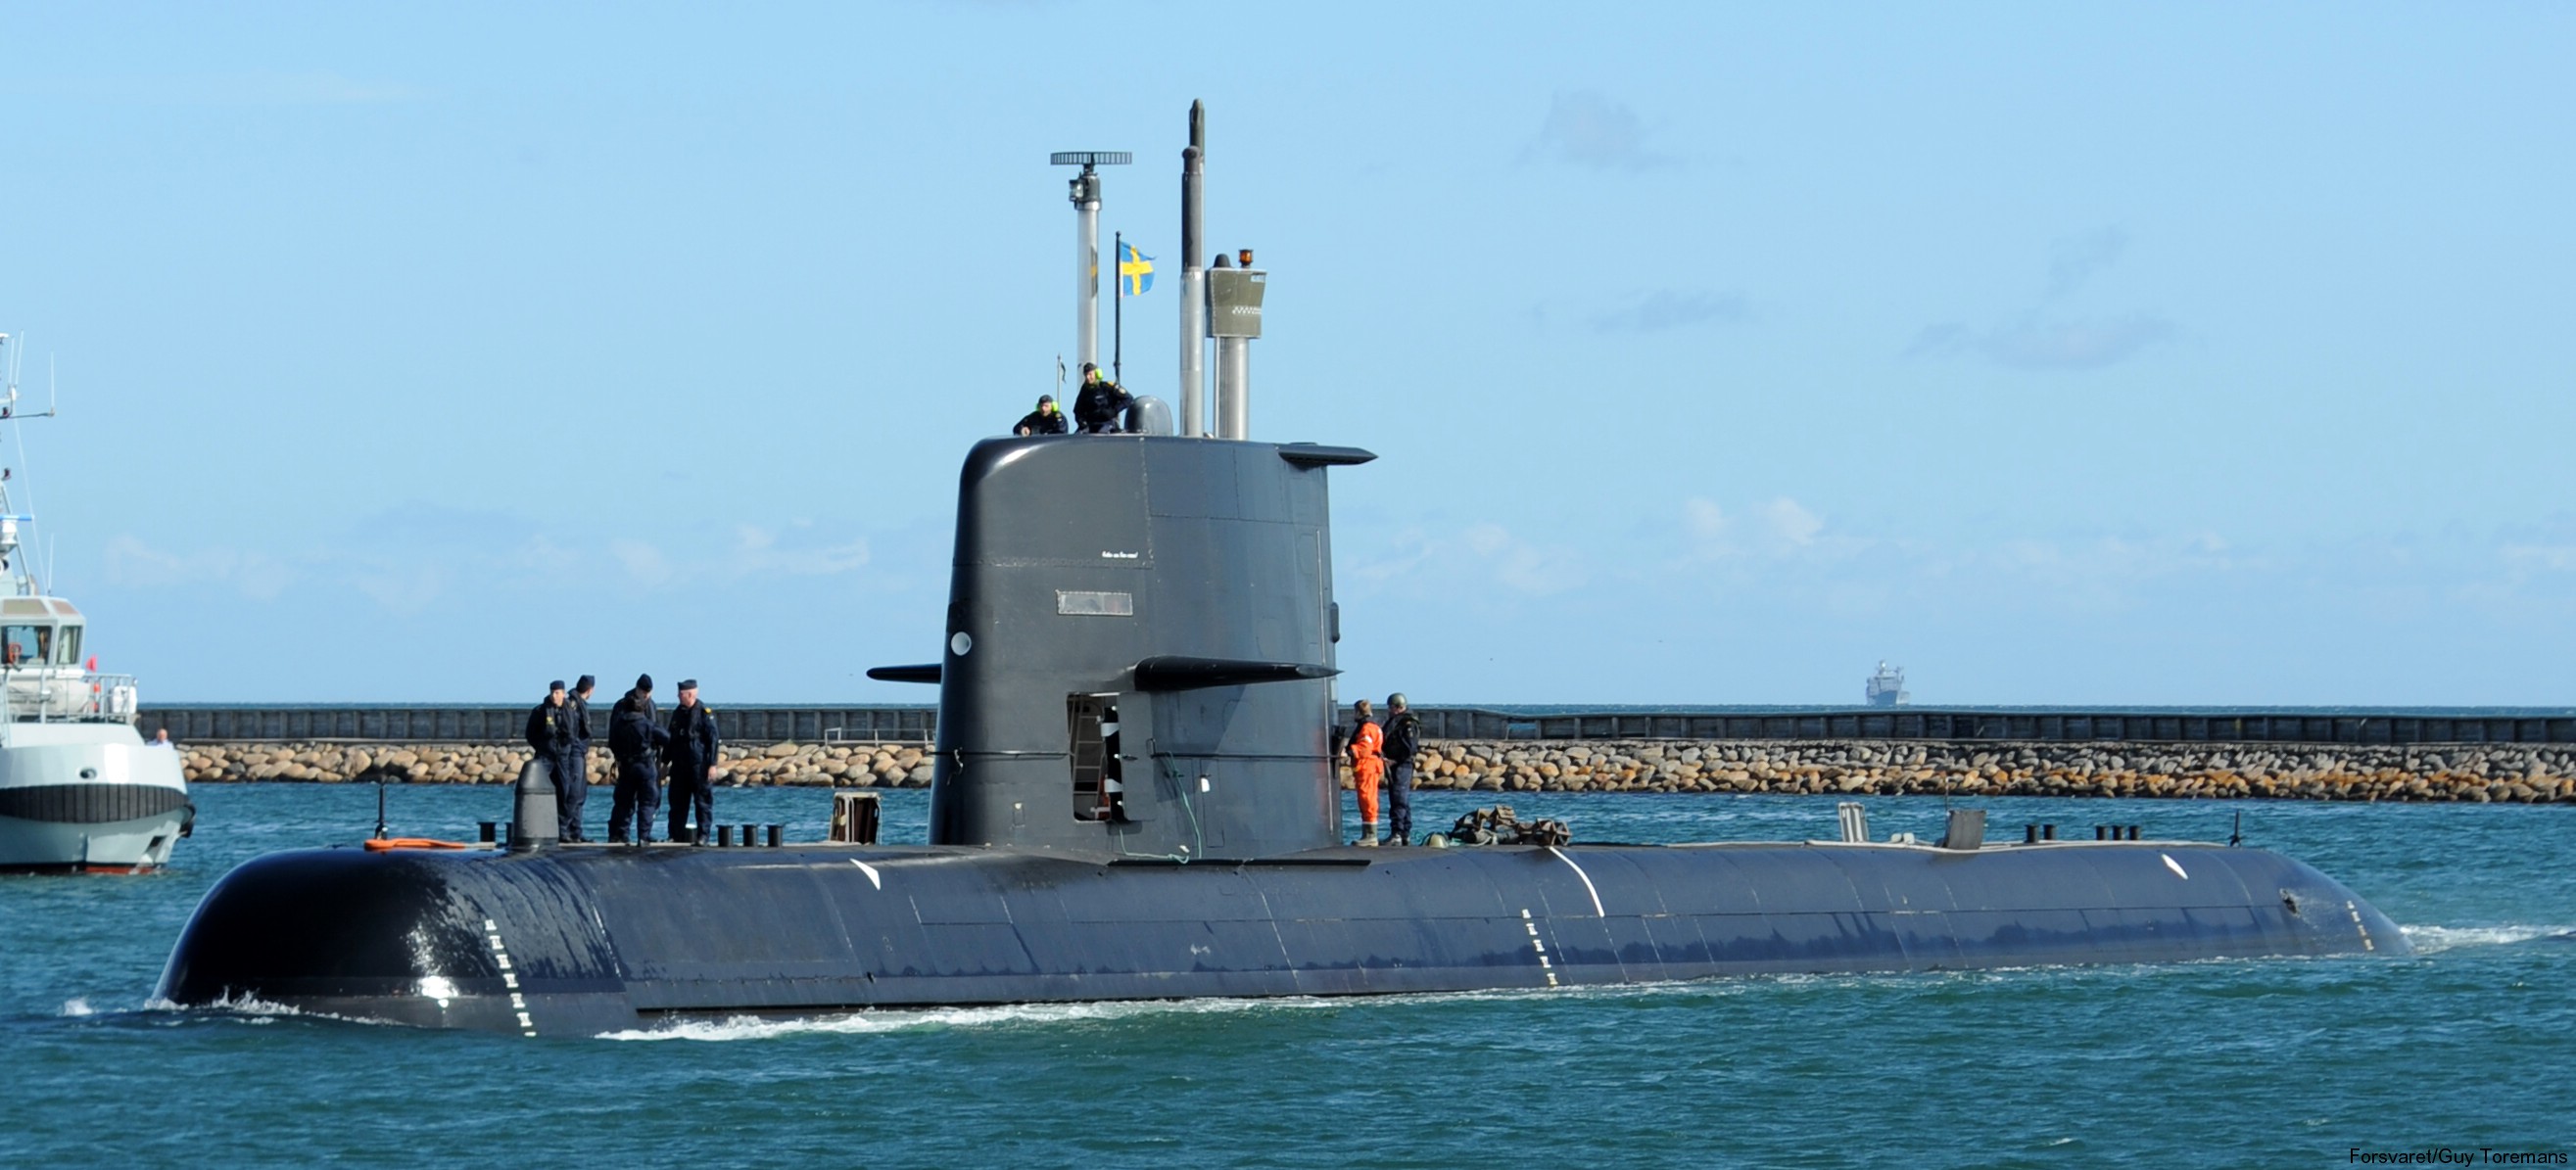 hswms hms gotland gtd class submarine ssk swedish navy svenska marinen försvarsmakten kockums 23